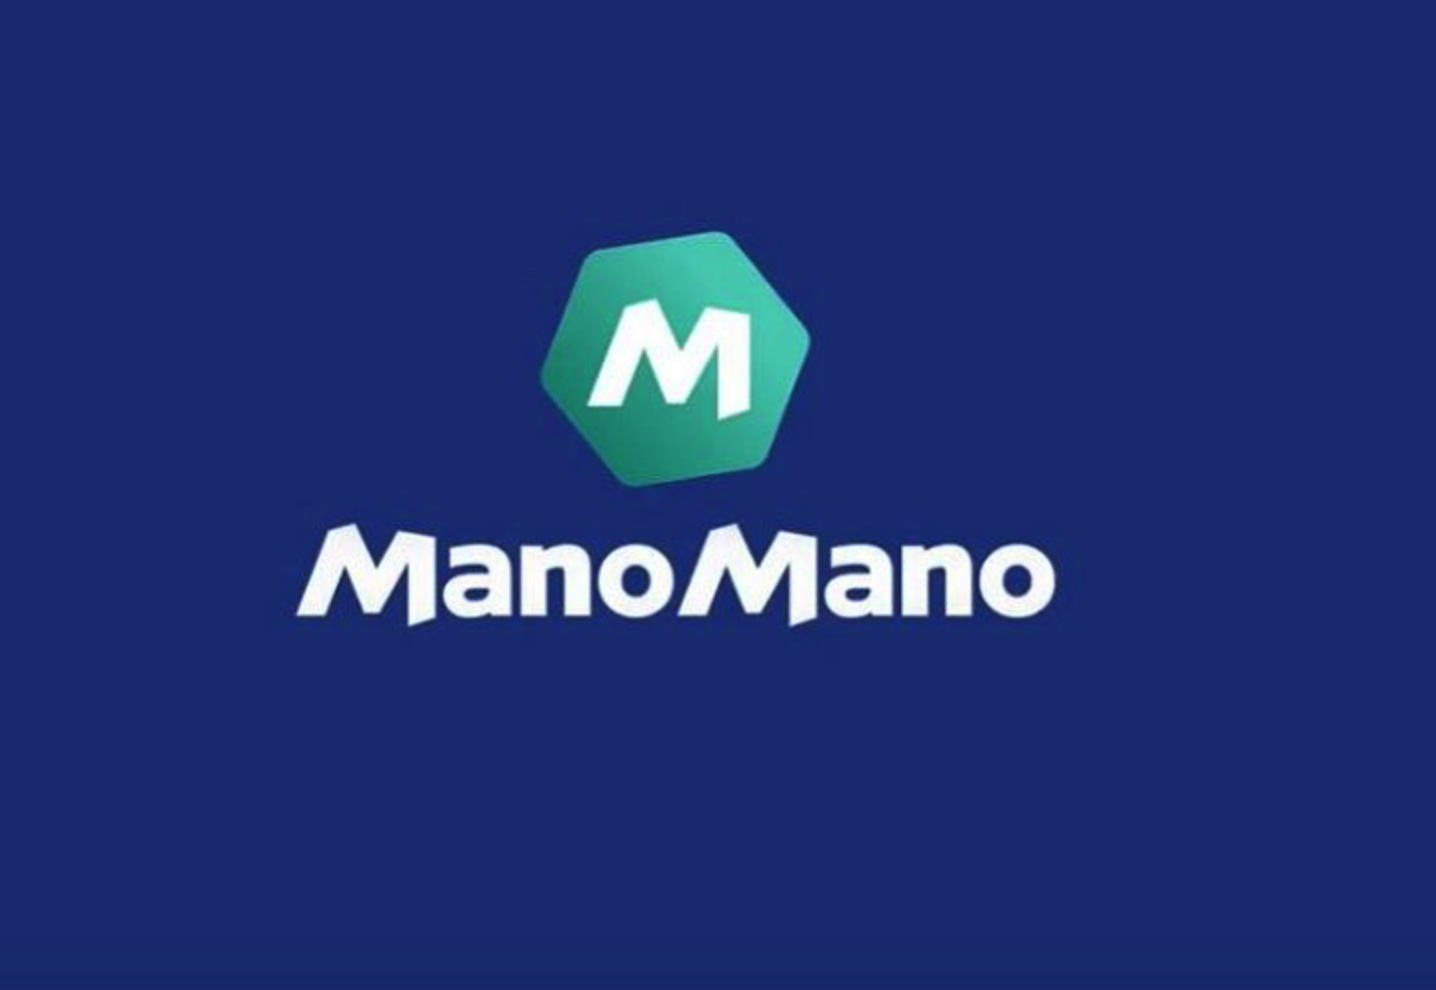 Mano Mano doubles sales in 2020